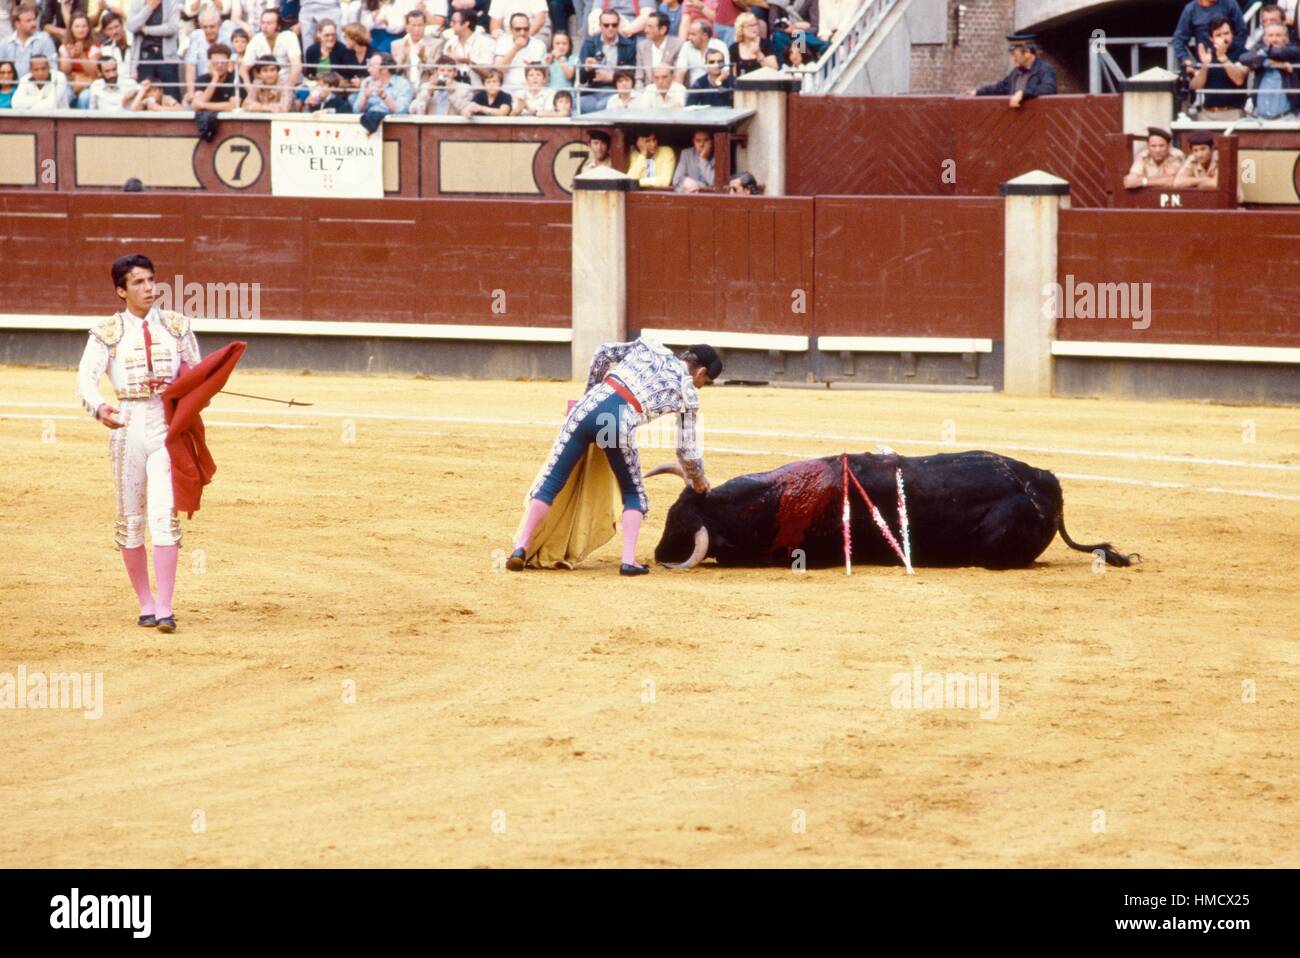 Bull sur le terrain bloqué par des barbelés (bâtons), scène de corrida banderilles, Madrid, Espagne. Banque D'Images